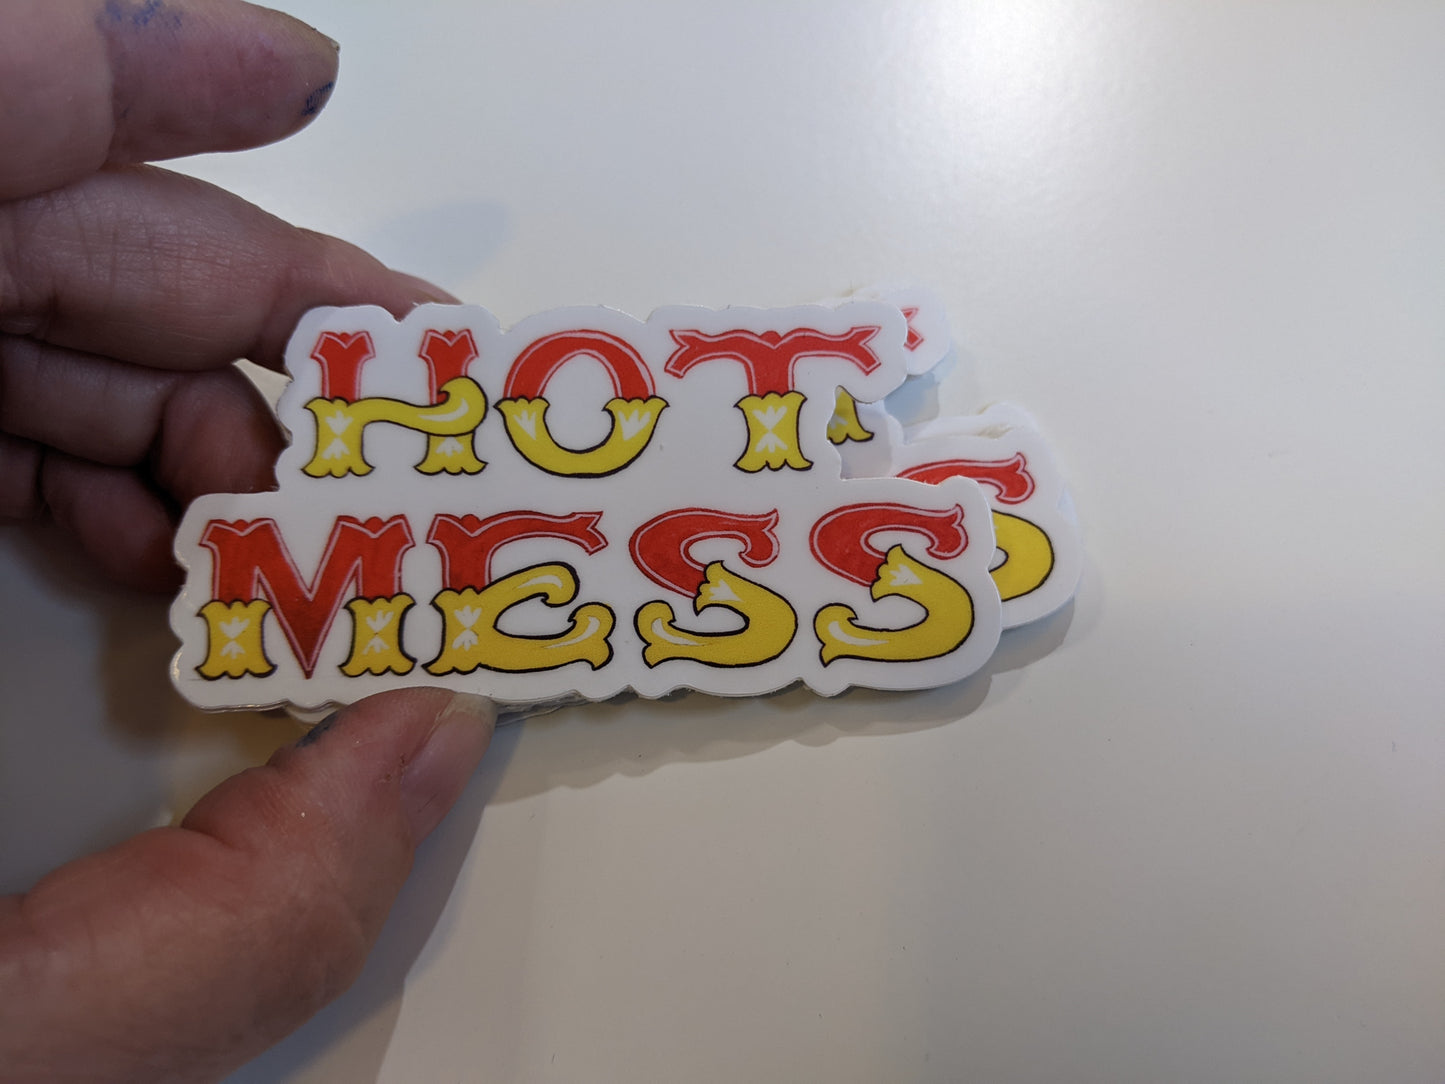 Hot mess sticker